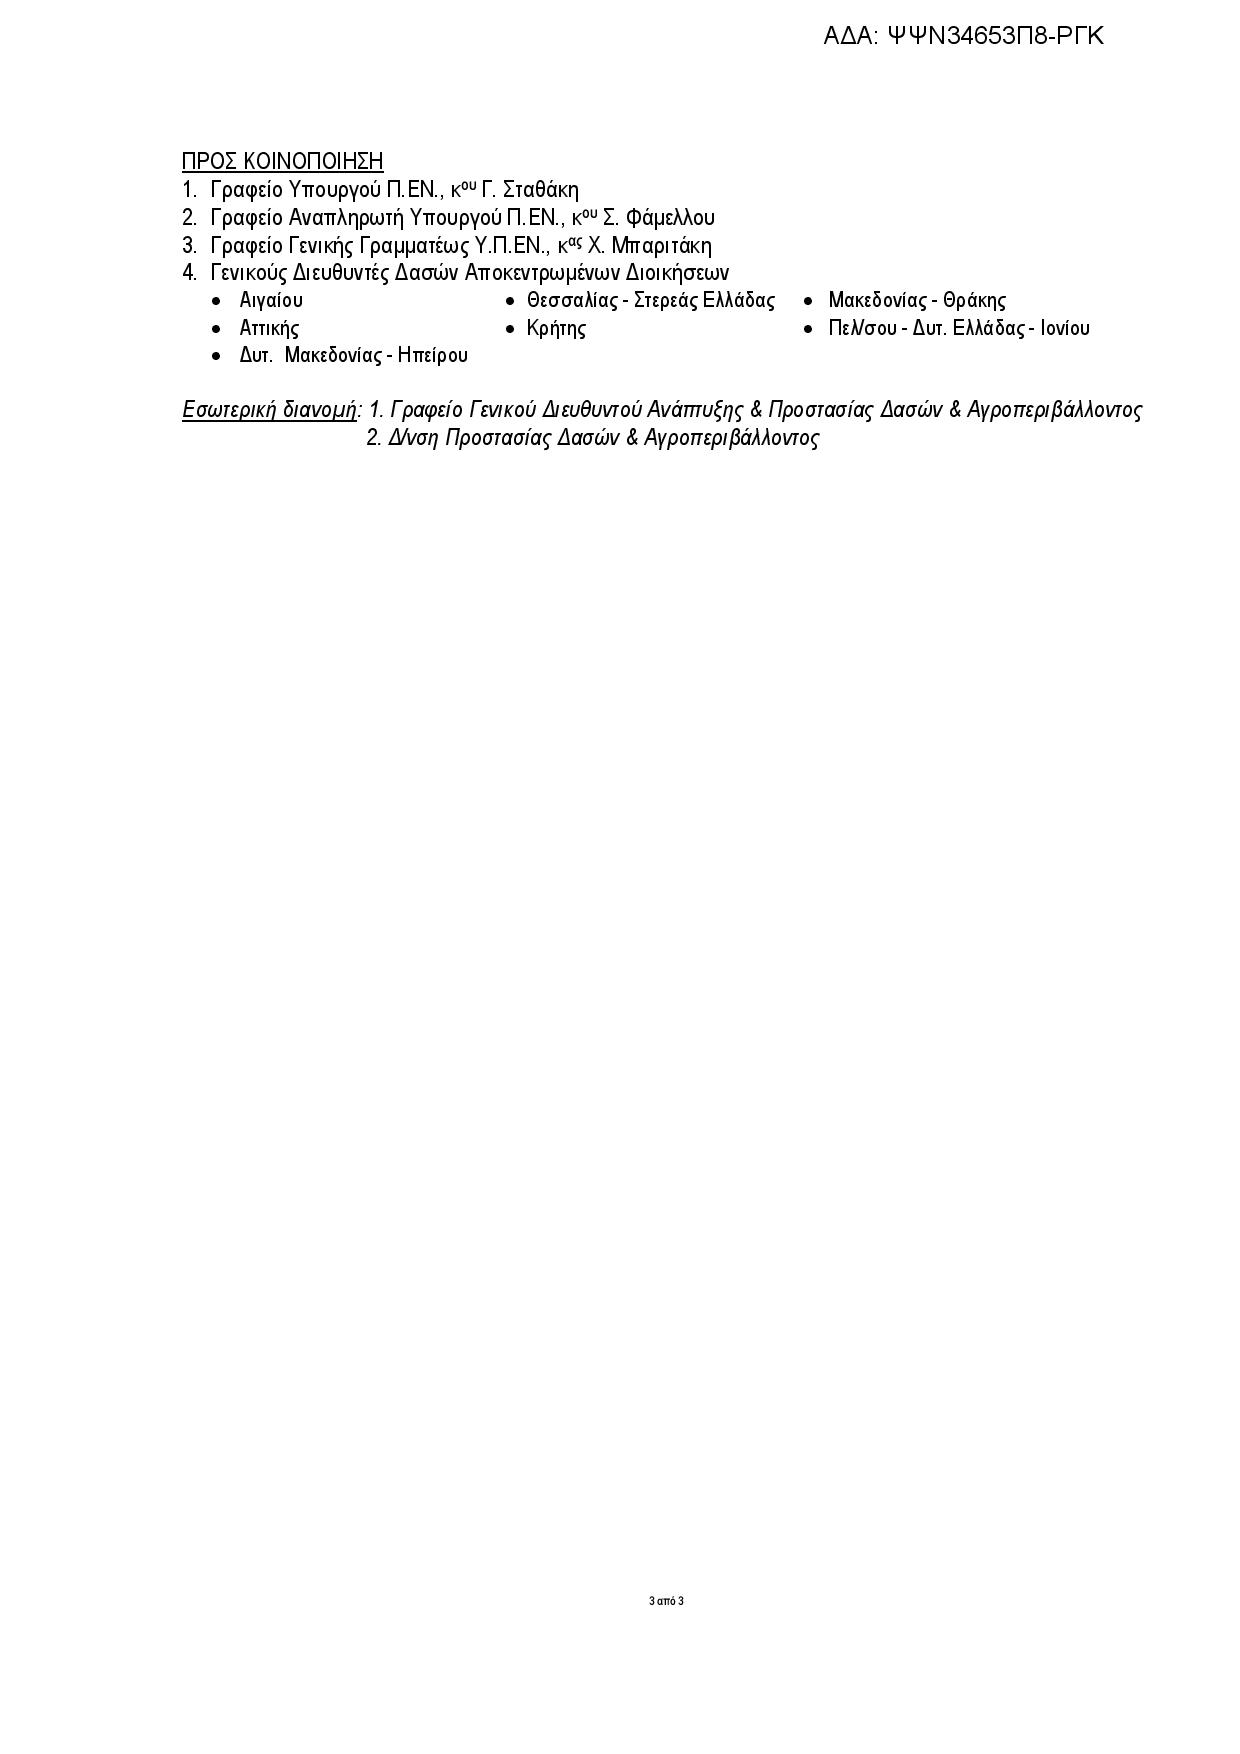 Αντικείμενο δασικών χαρτών και προγραμματισμός αναρτήσεων (μέχρι Παρασκευή 20/1/17 η Έυβοια) Programmatismos Anariseon DX 11012017 page 003